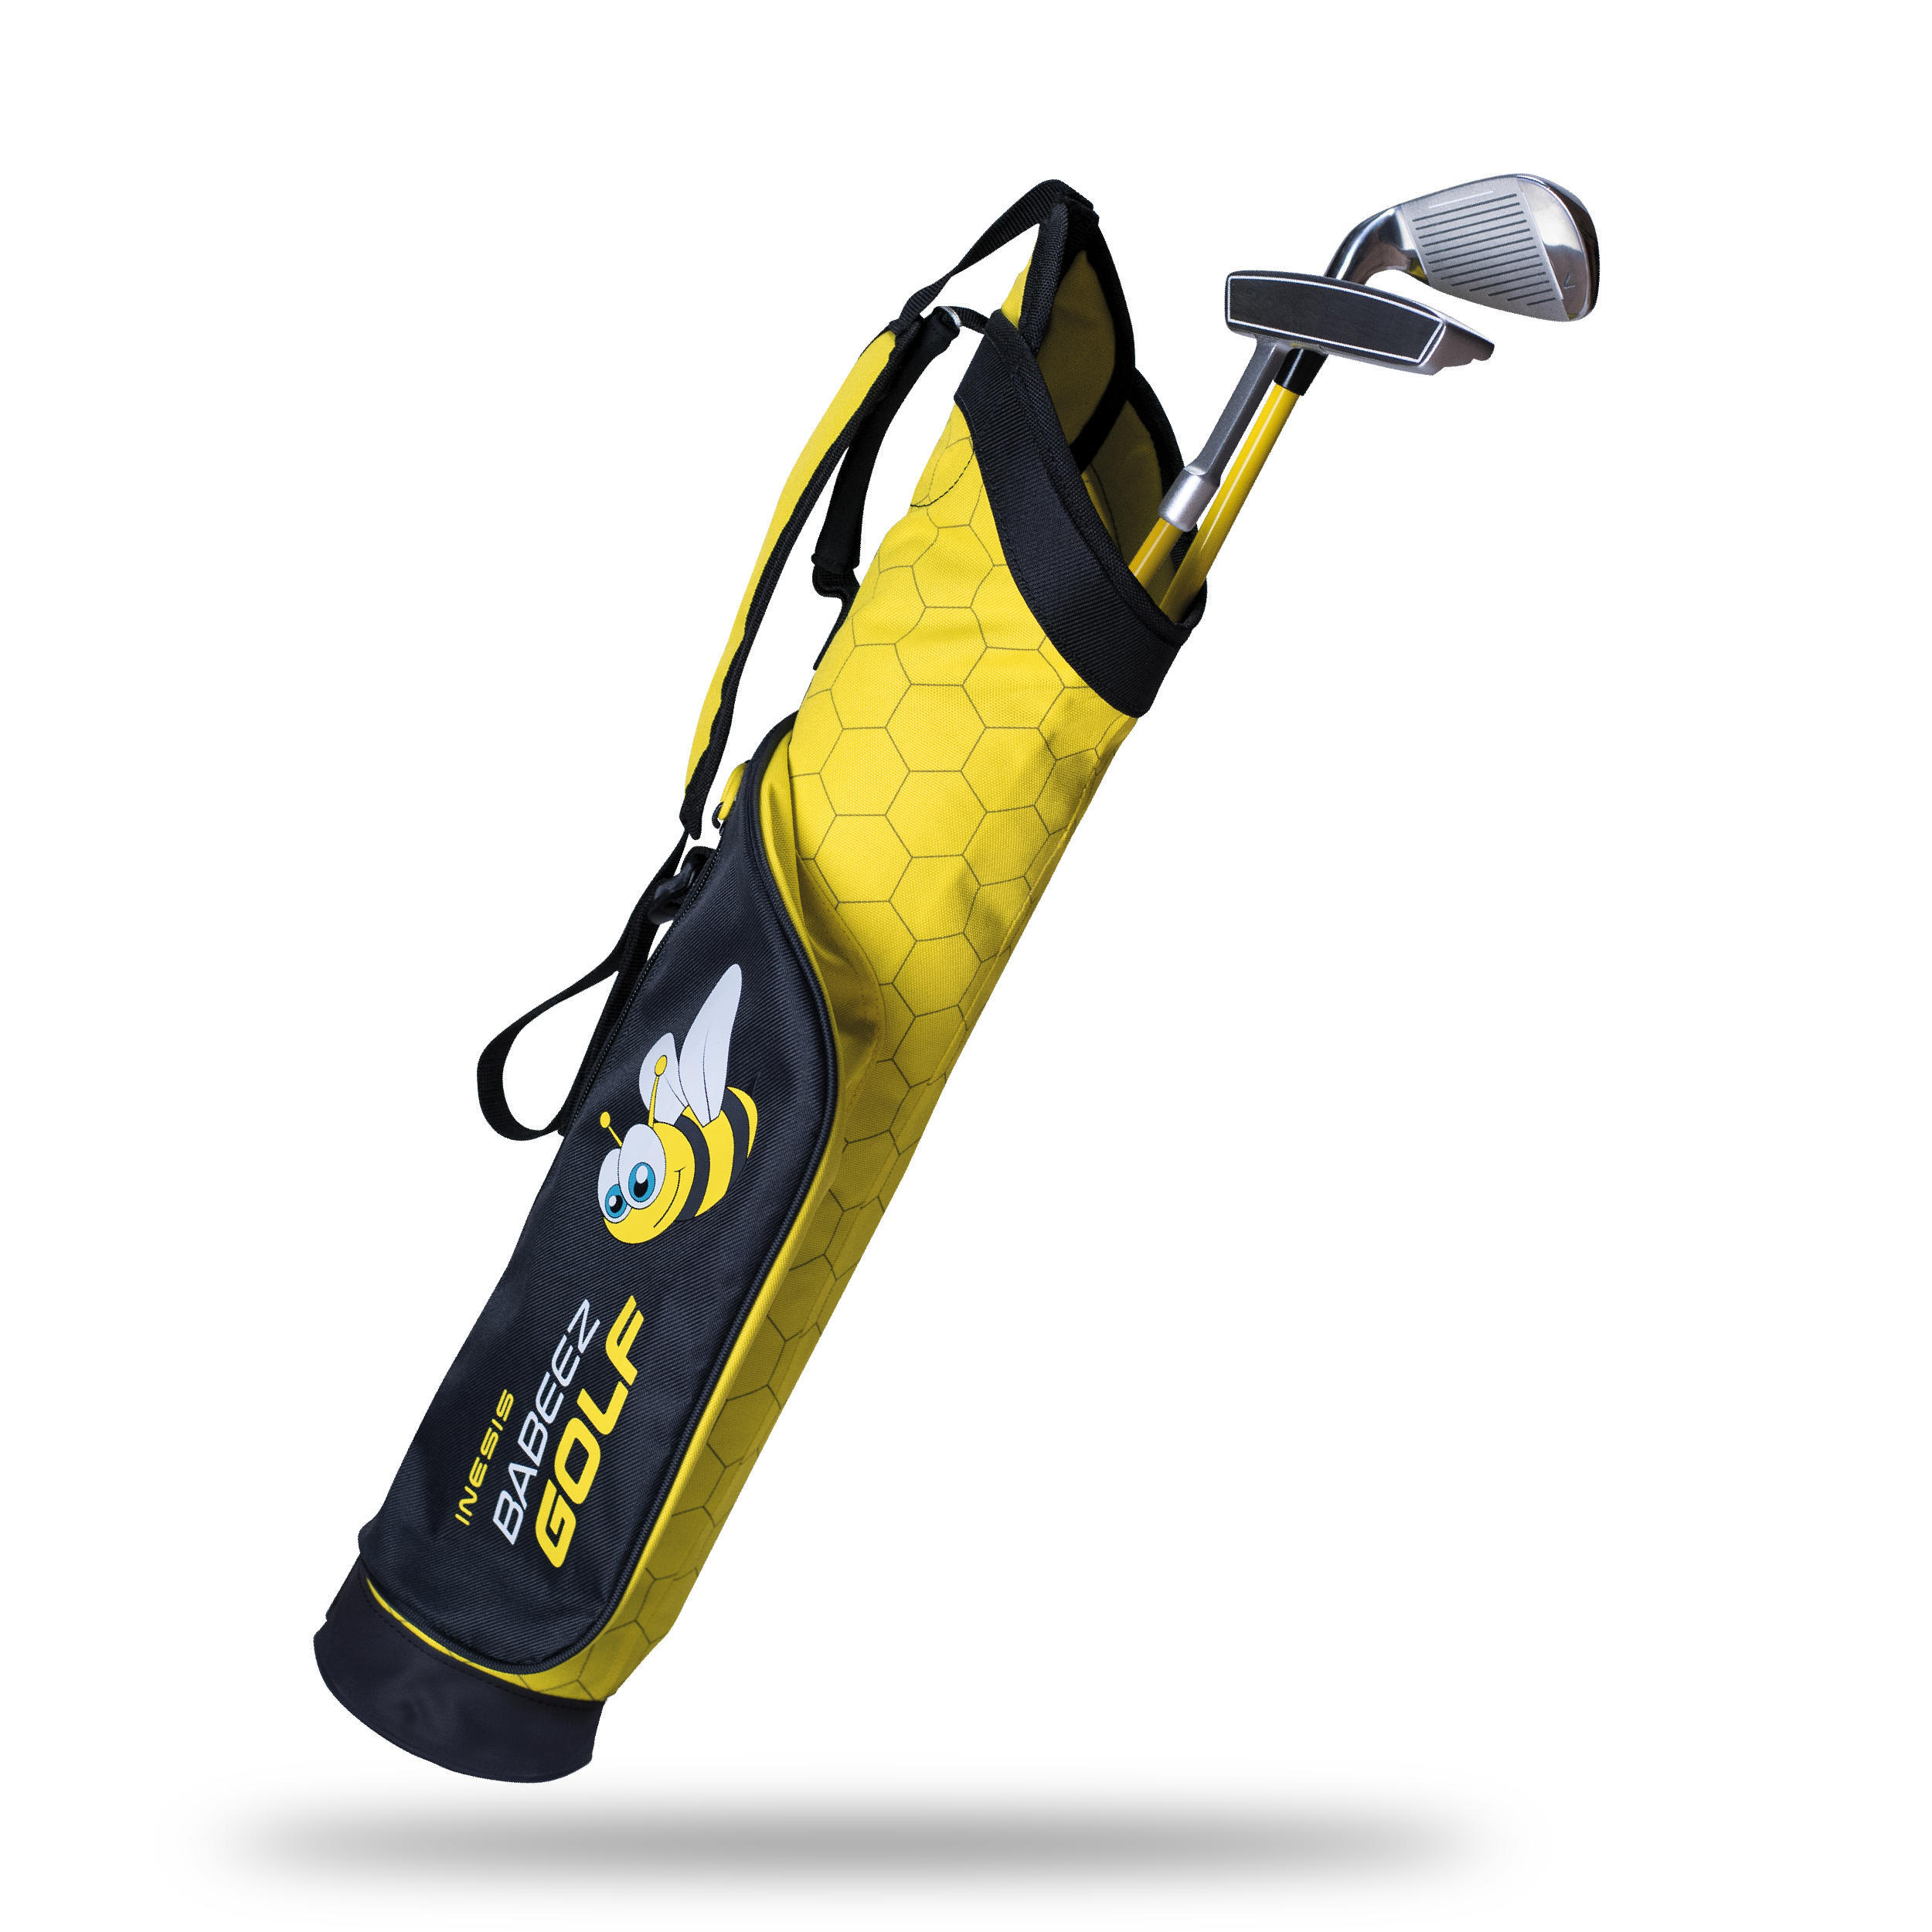 Набор для игры в гольф RH 2-4 Years Junior INESIS, солнечно-желтый полотенце для гольфа трехскладное полотенце для гольфа с вафельным узором набор инструментов для чистки клюшек подарки для гольфа черно